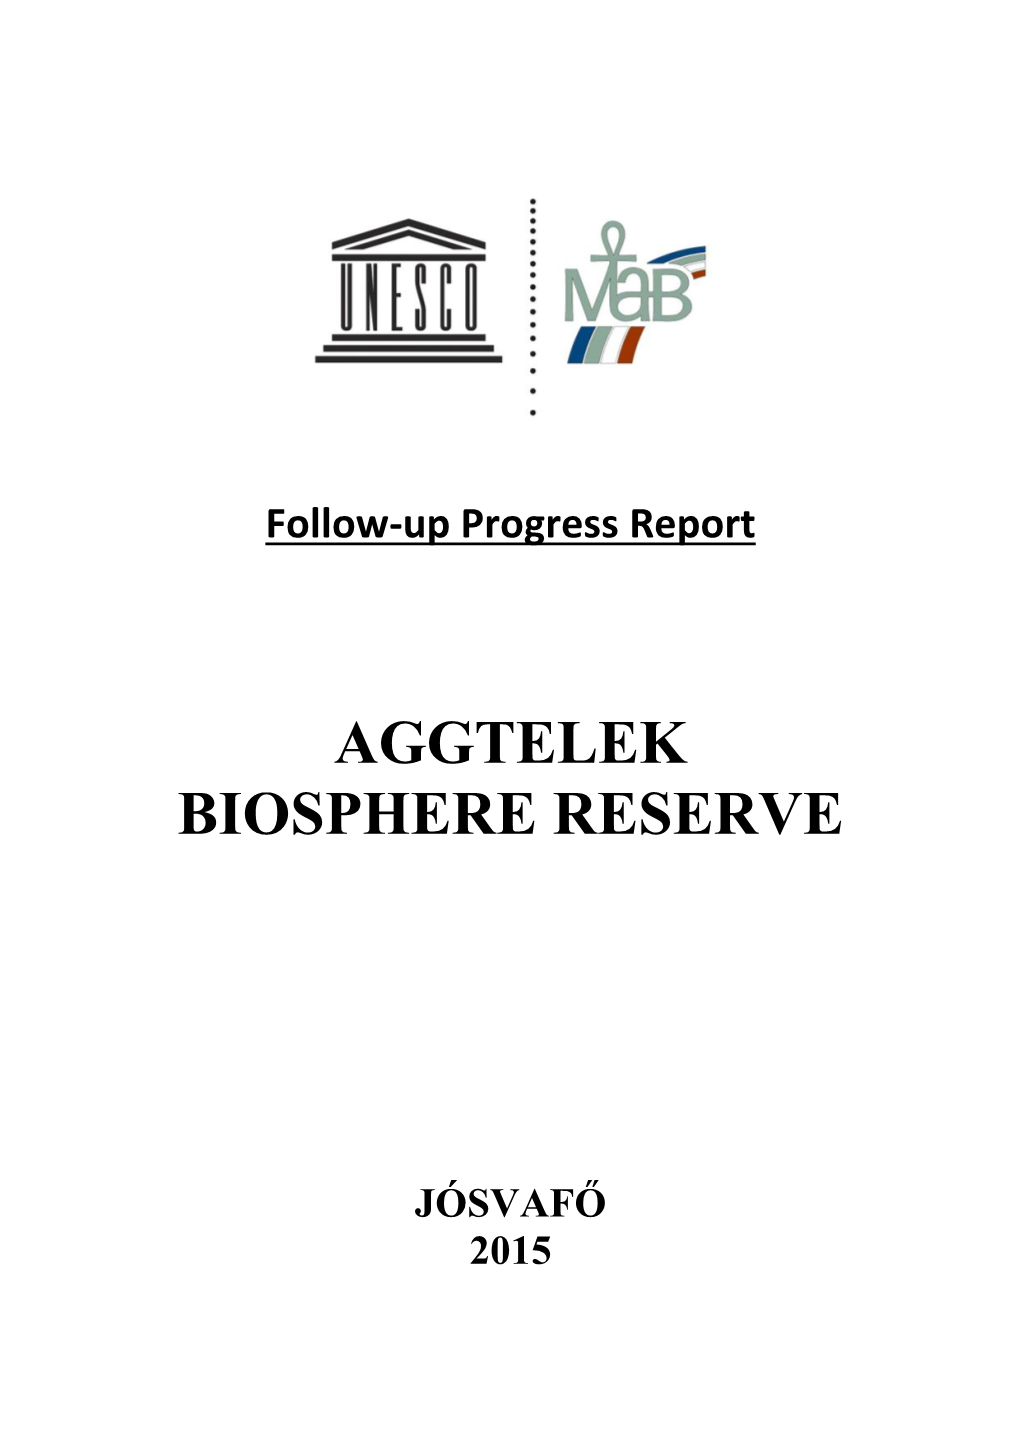 Aggtelek Biosphere Reserve